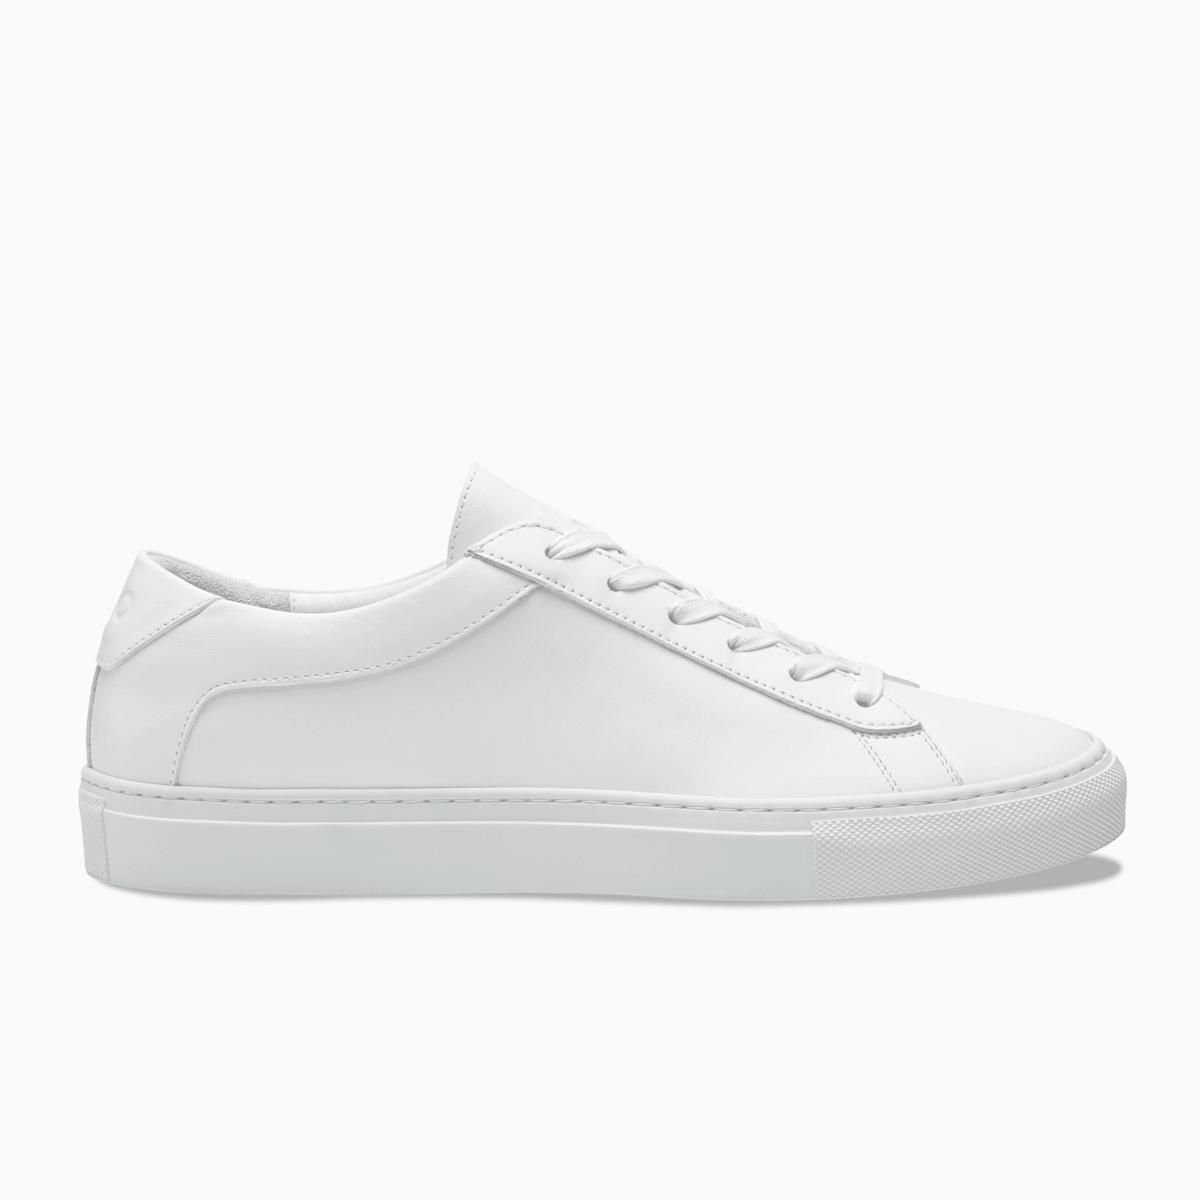 Koio Capri Triple White Sneakers